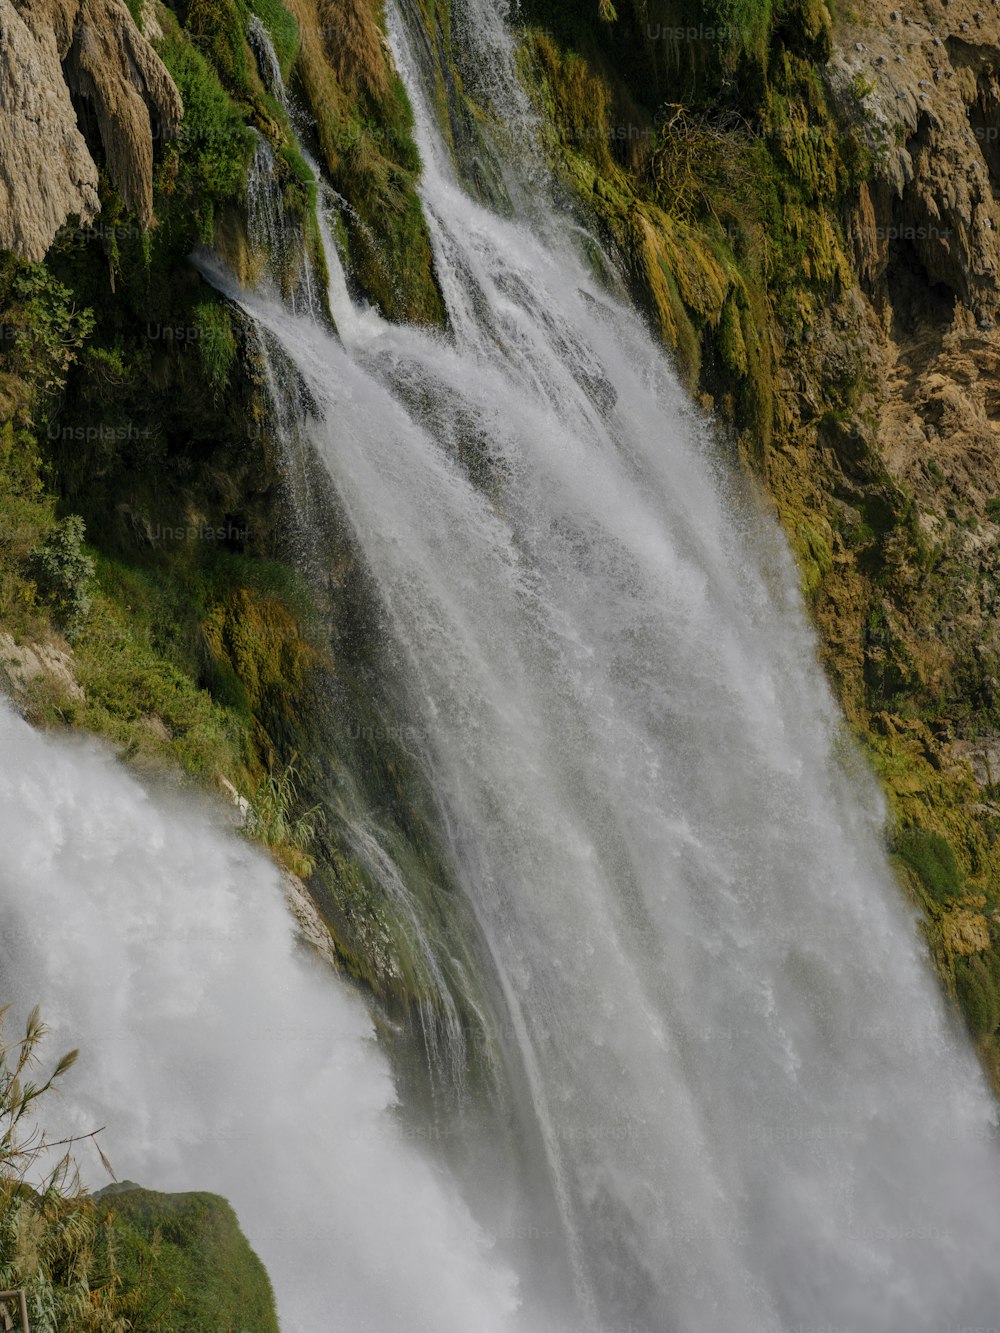 Ein großer Wasserfall, aus dem viel Wasser austritt